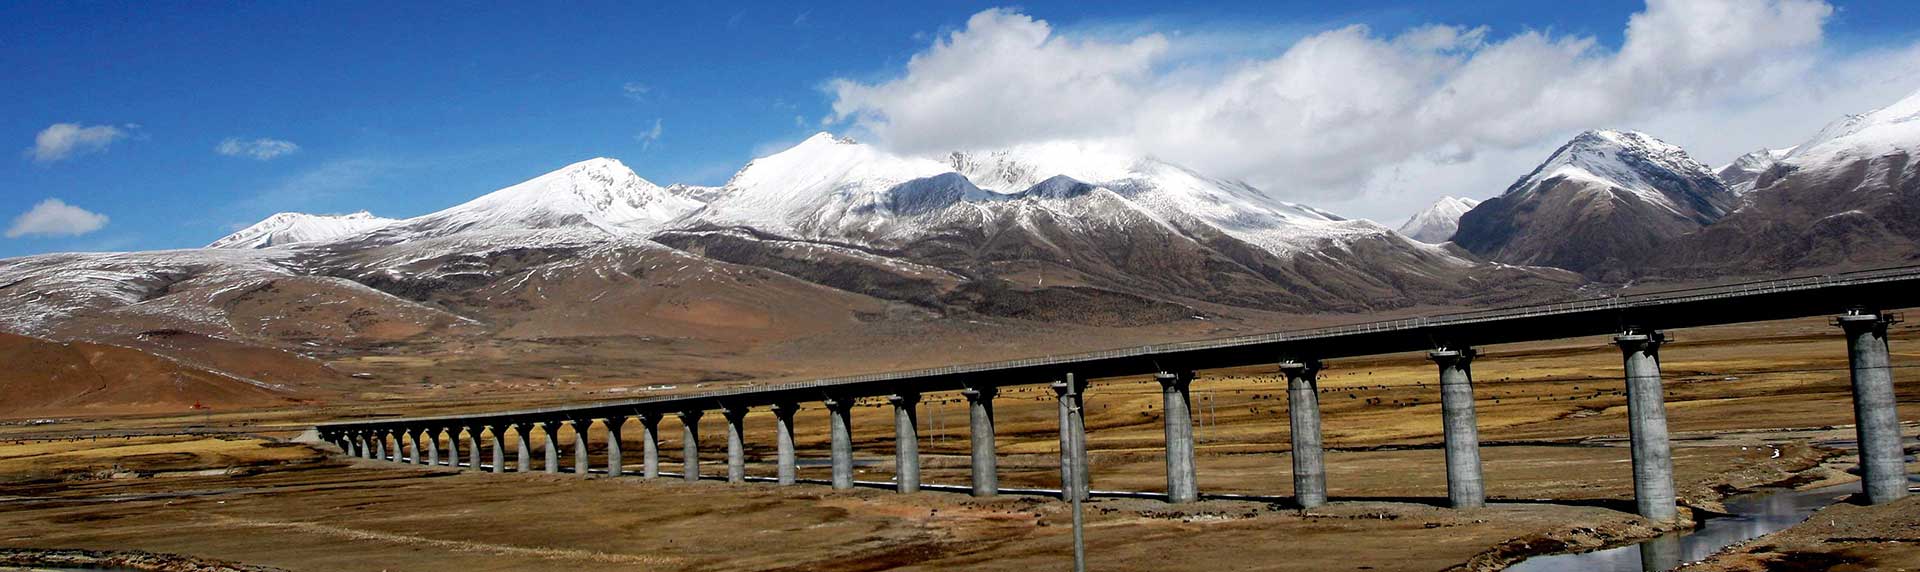 Tibetbahn - China